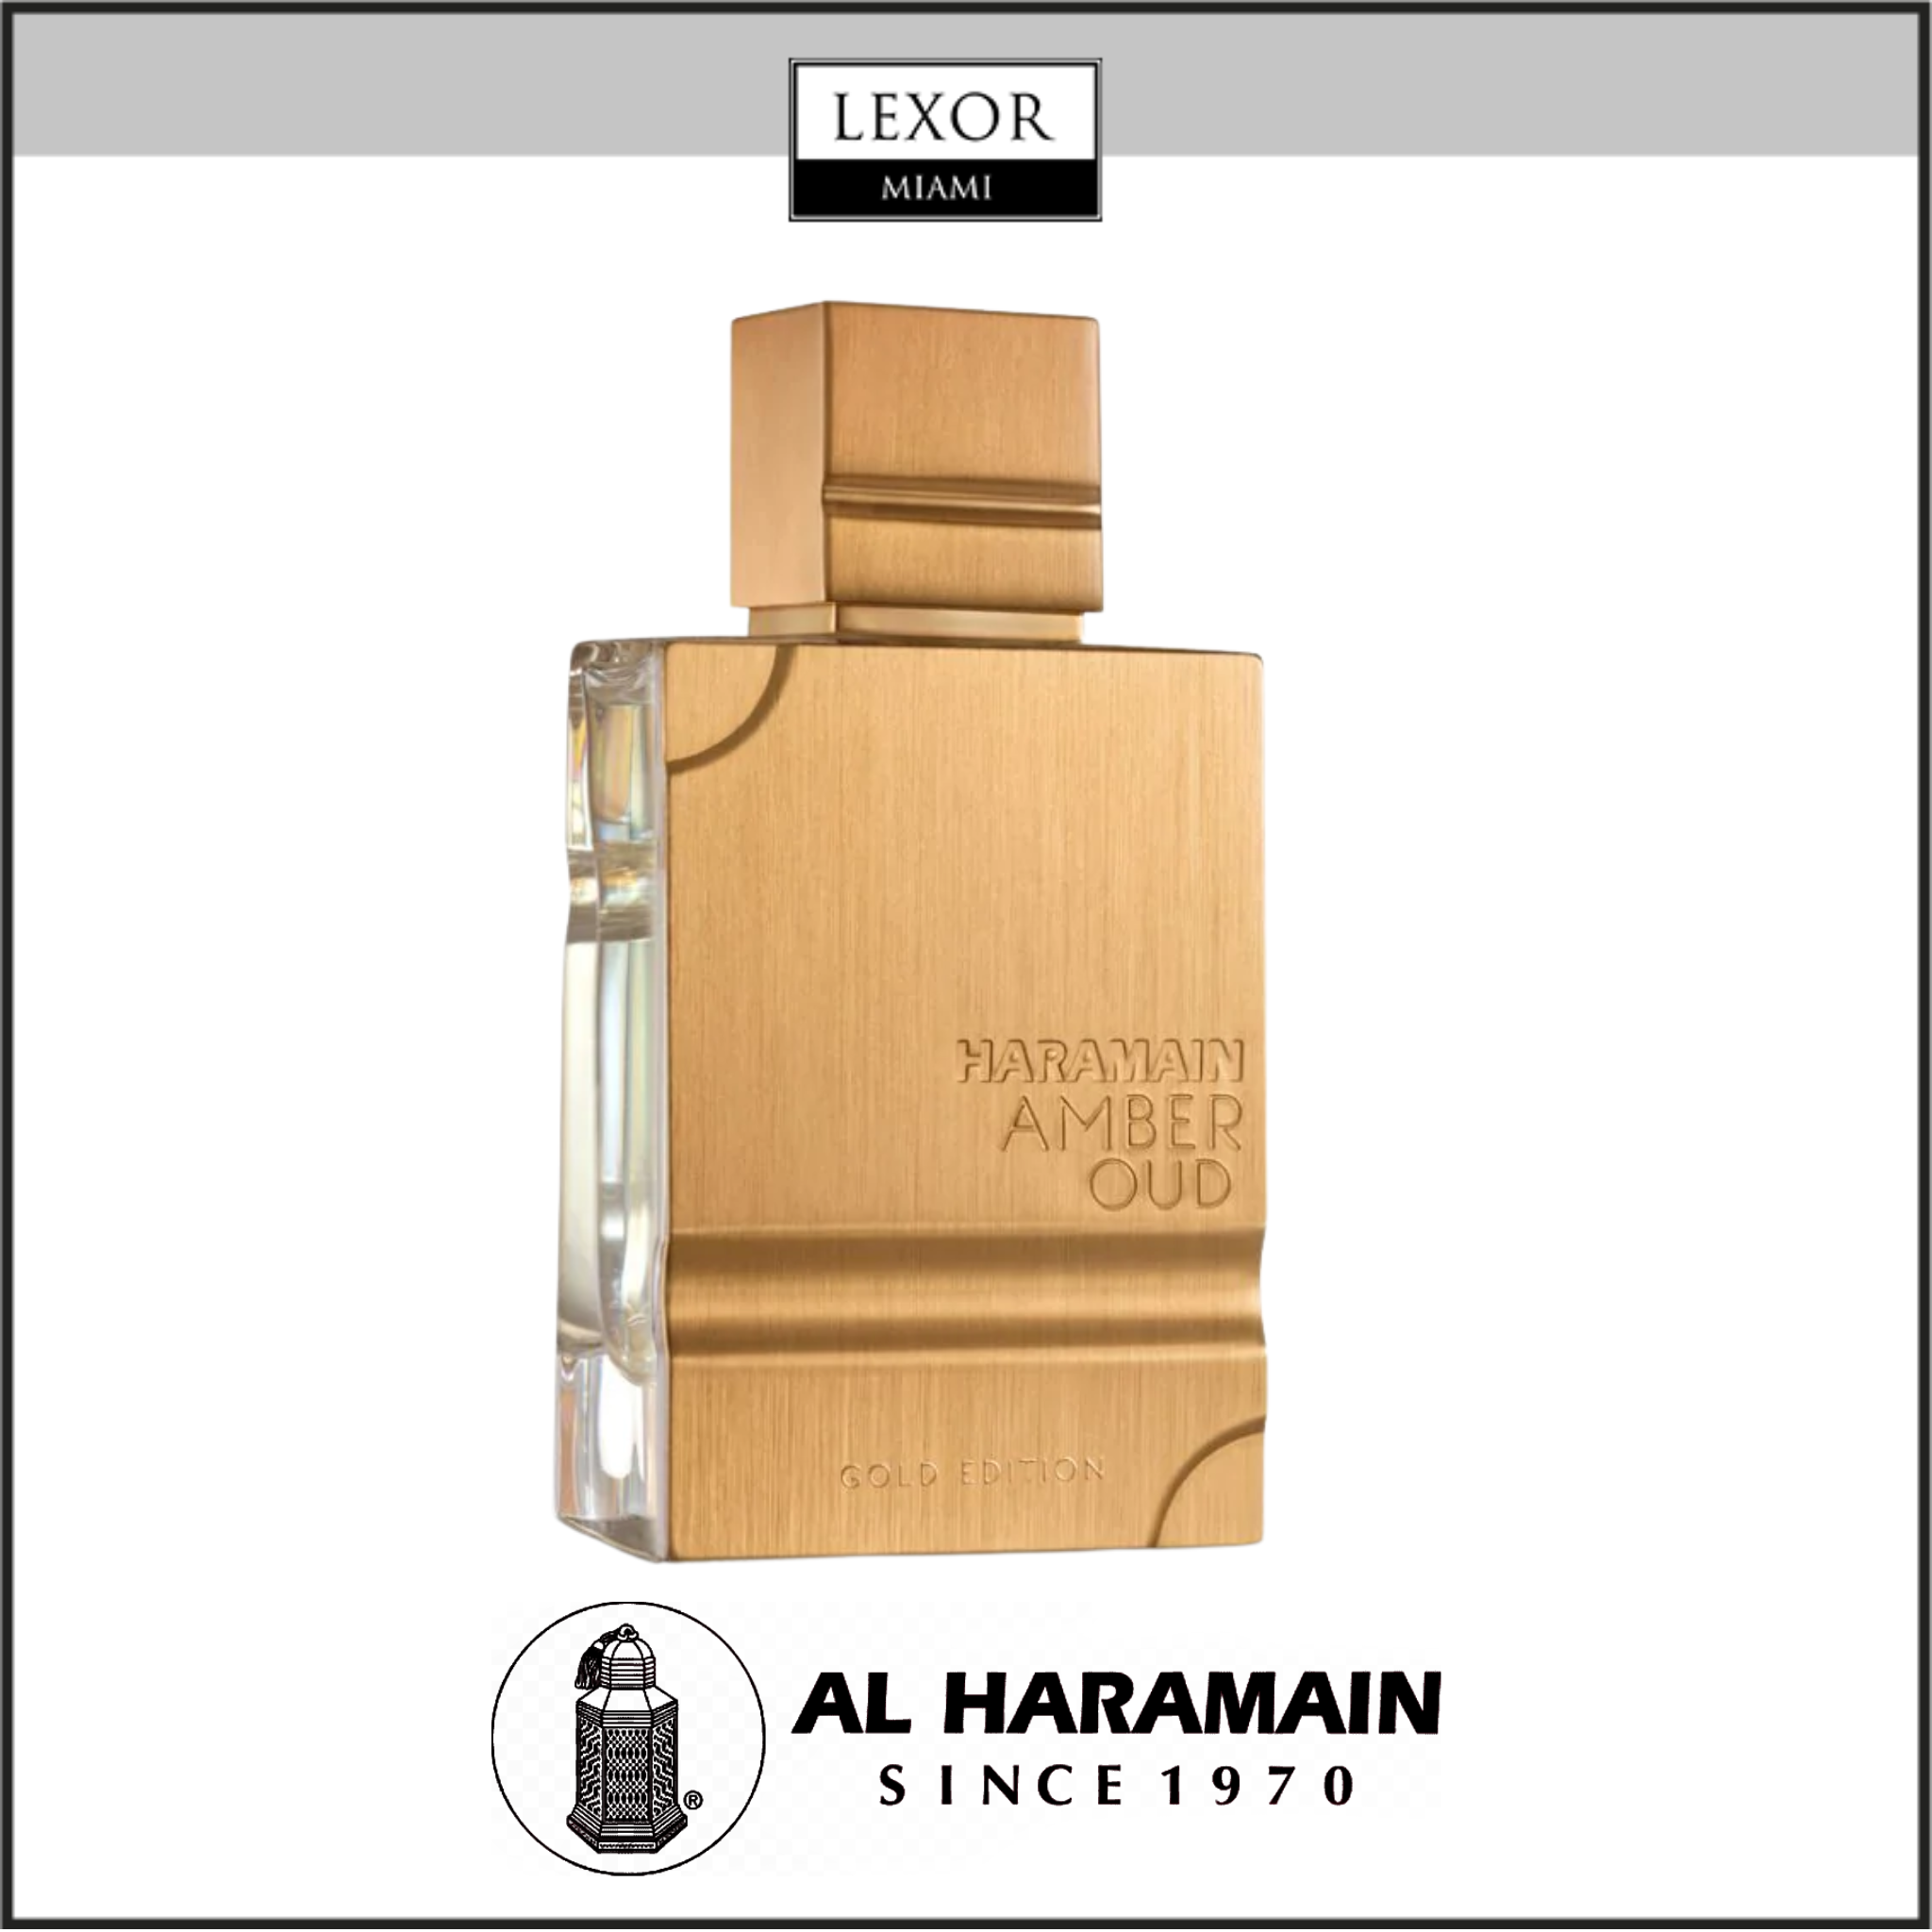 Al Haramain Perfumes Lexor Miami